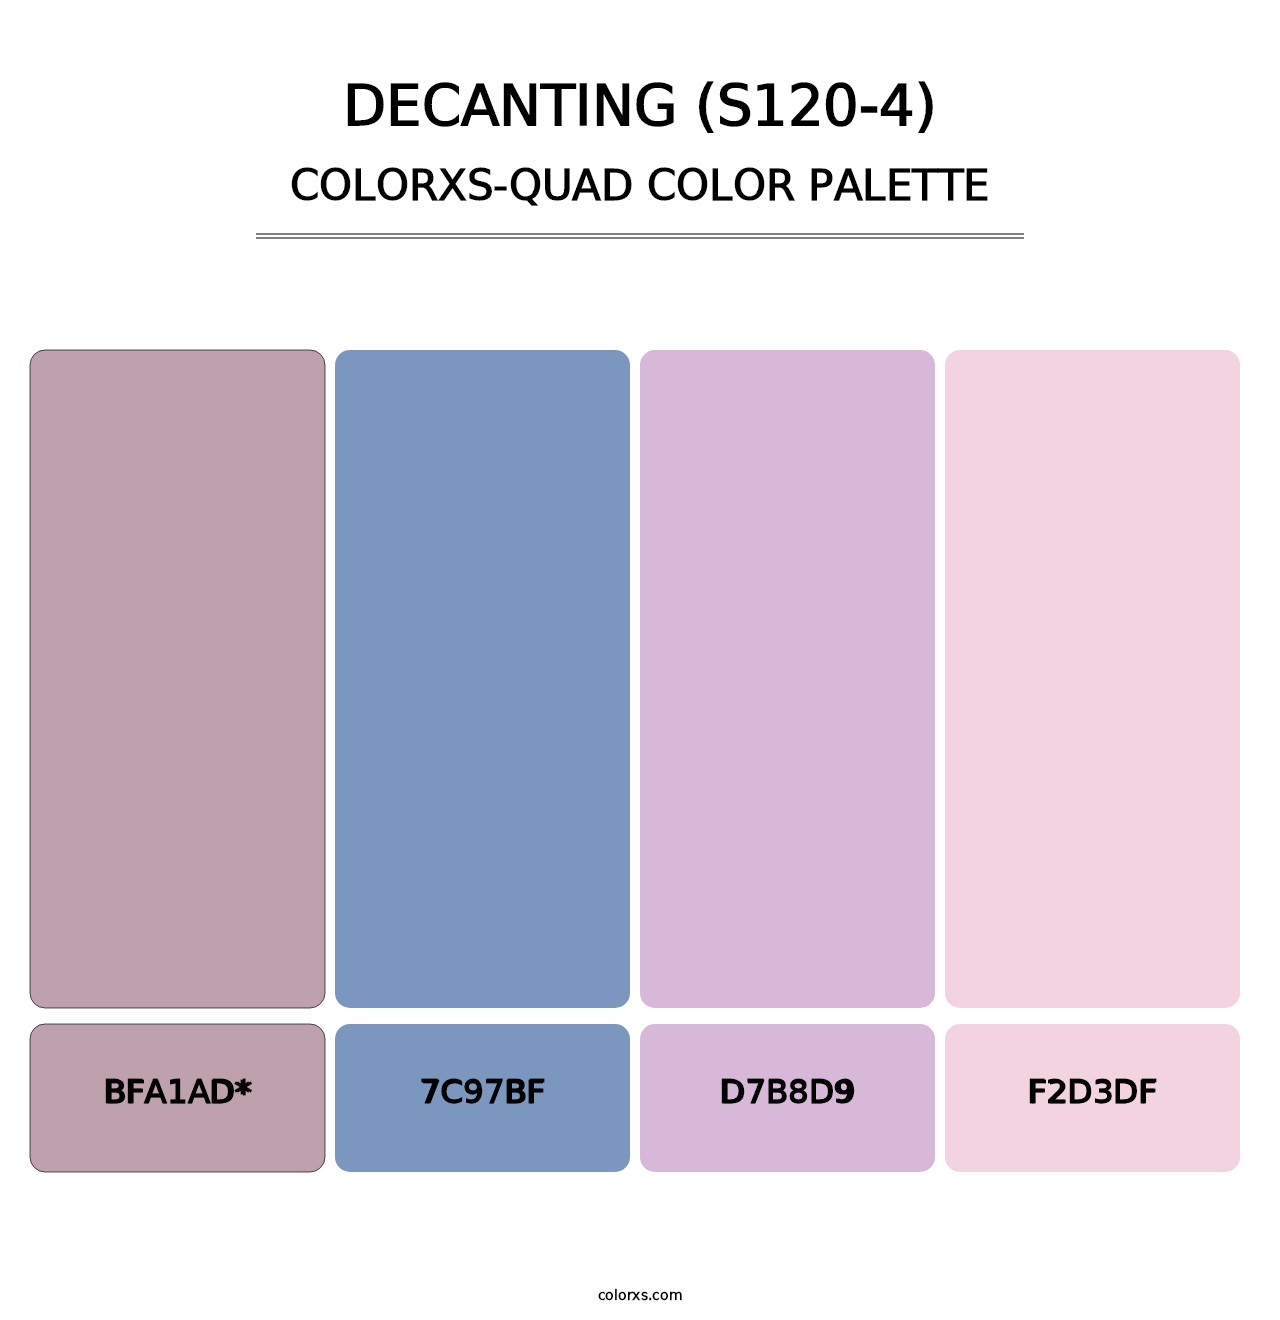 Decanting (S120-4) - Colorxs Quad Palette